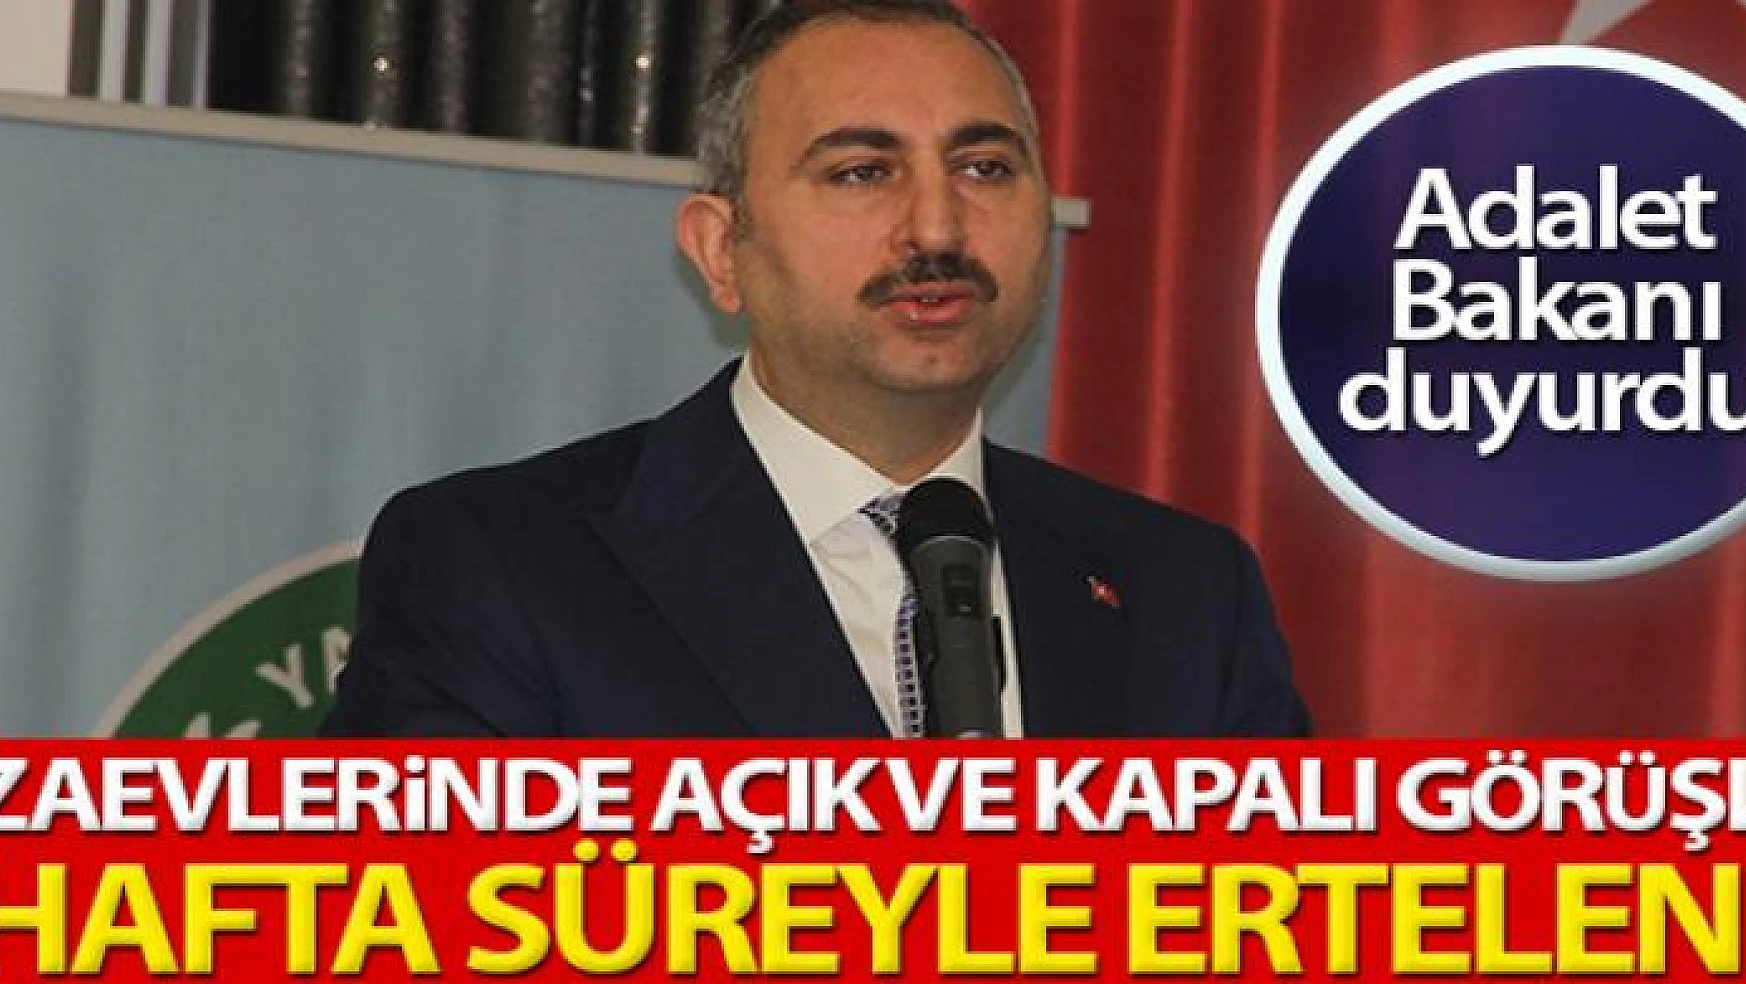 Bakan Gül duyurdu: 'Cezaevlerinde açık ve kapalı görüşler 2 hafta süreyle ertelendi'